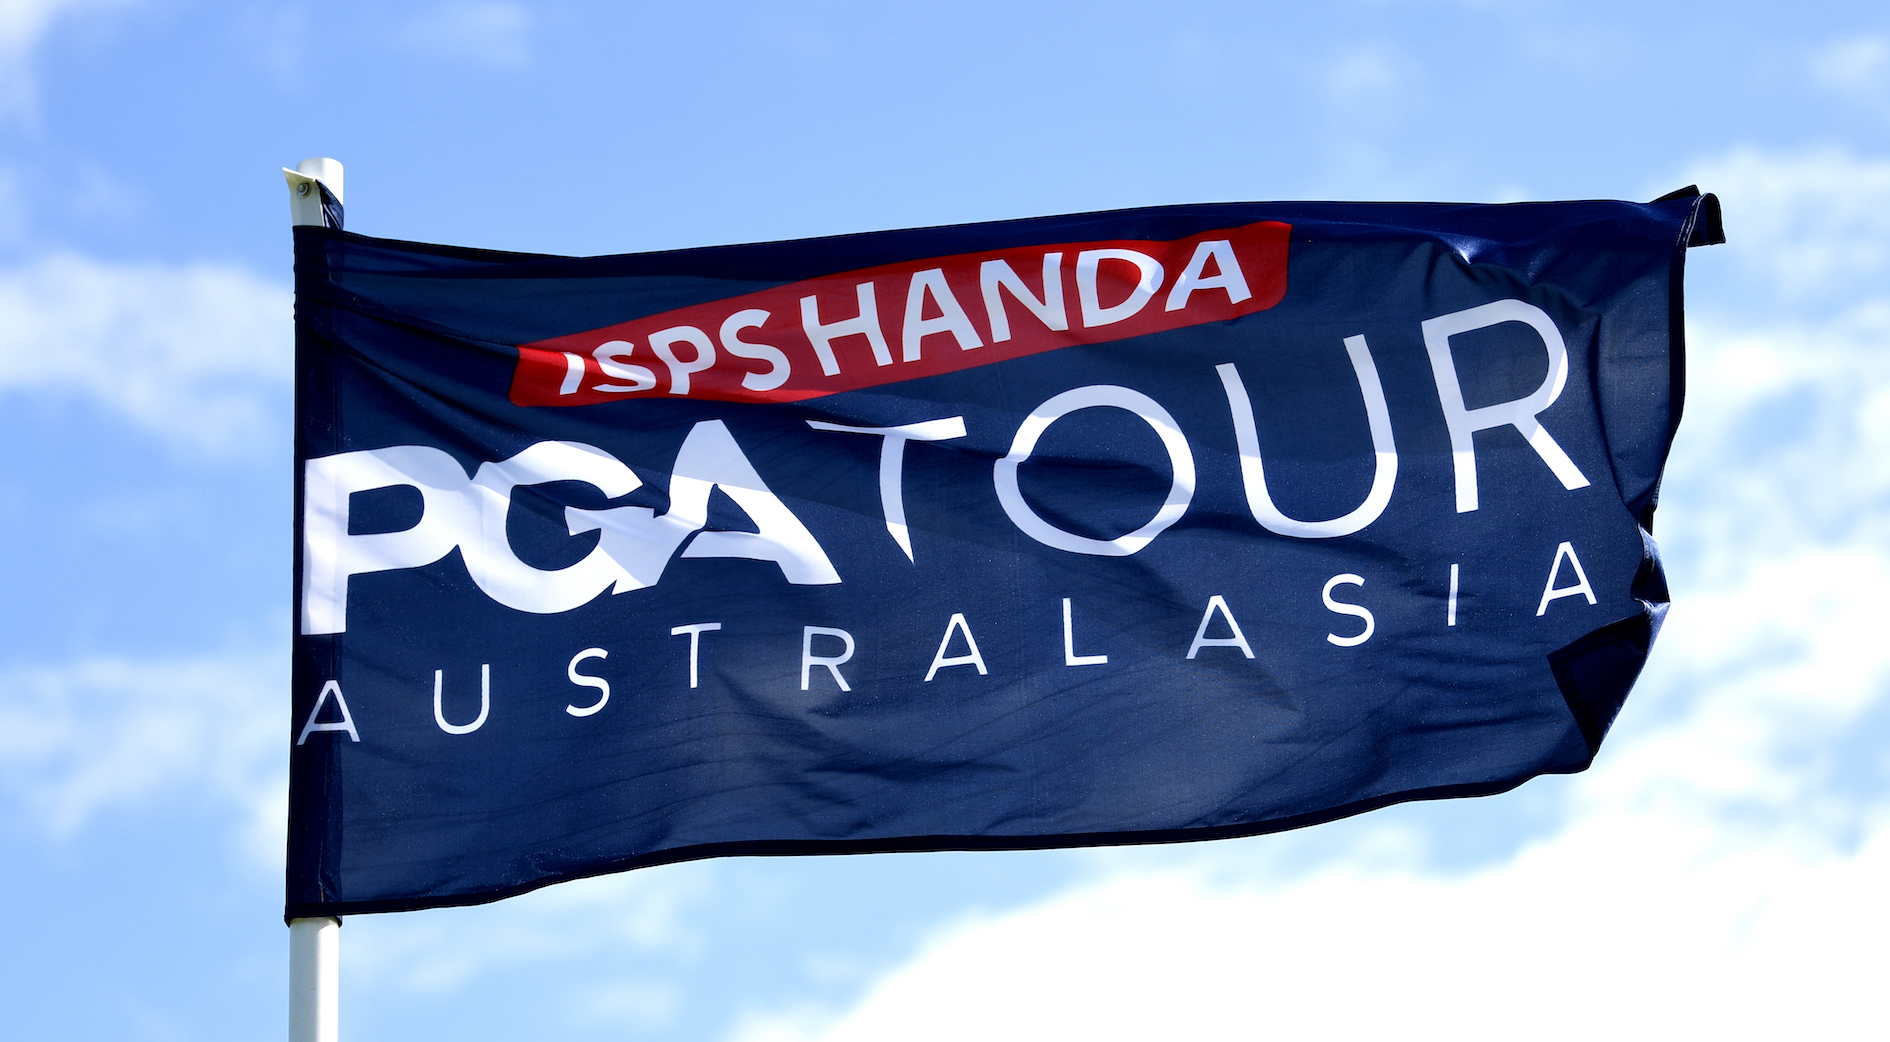 PGA Tour of Australasia and DP World Tour strengthen strategic